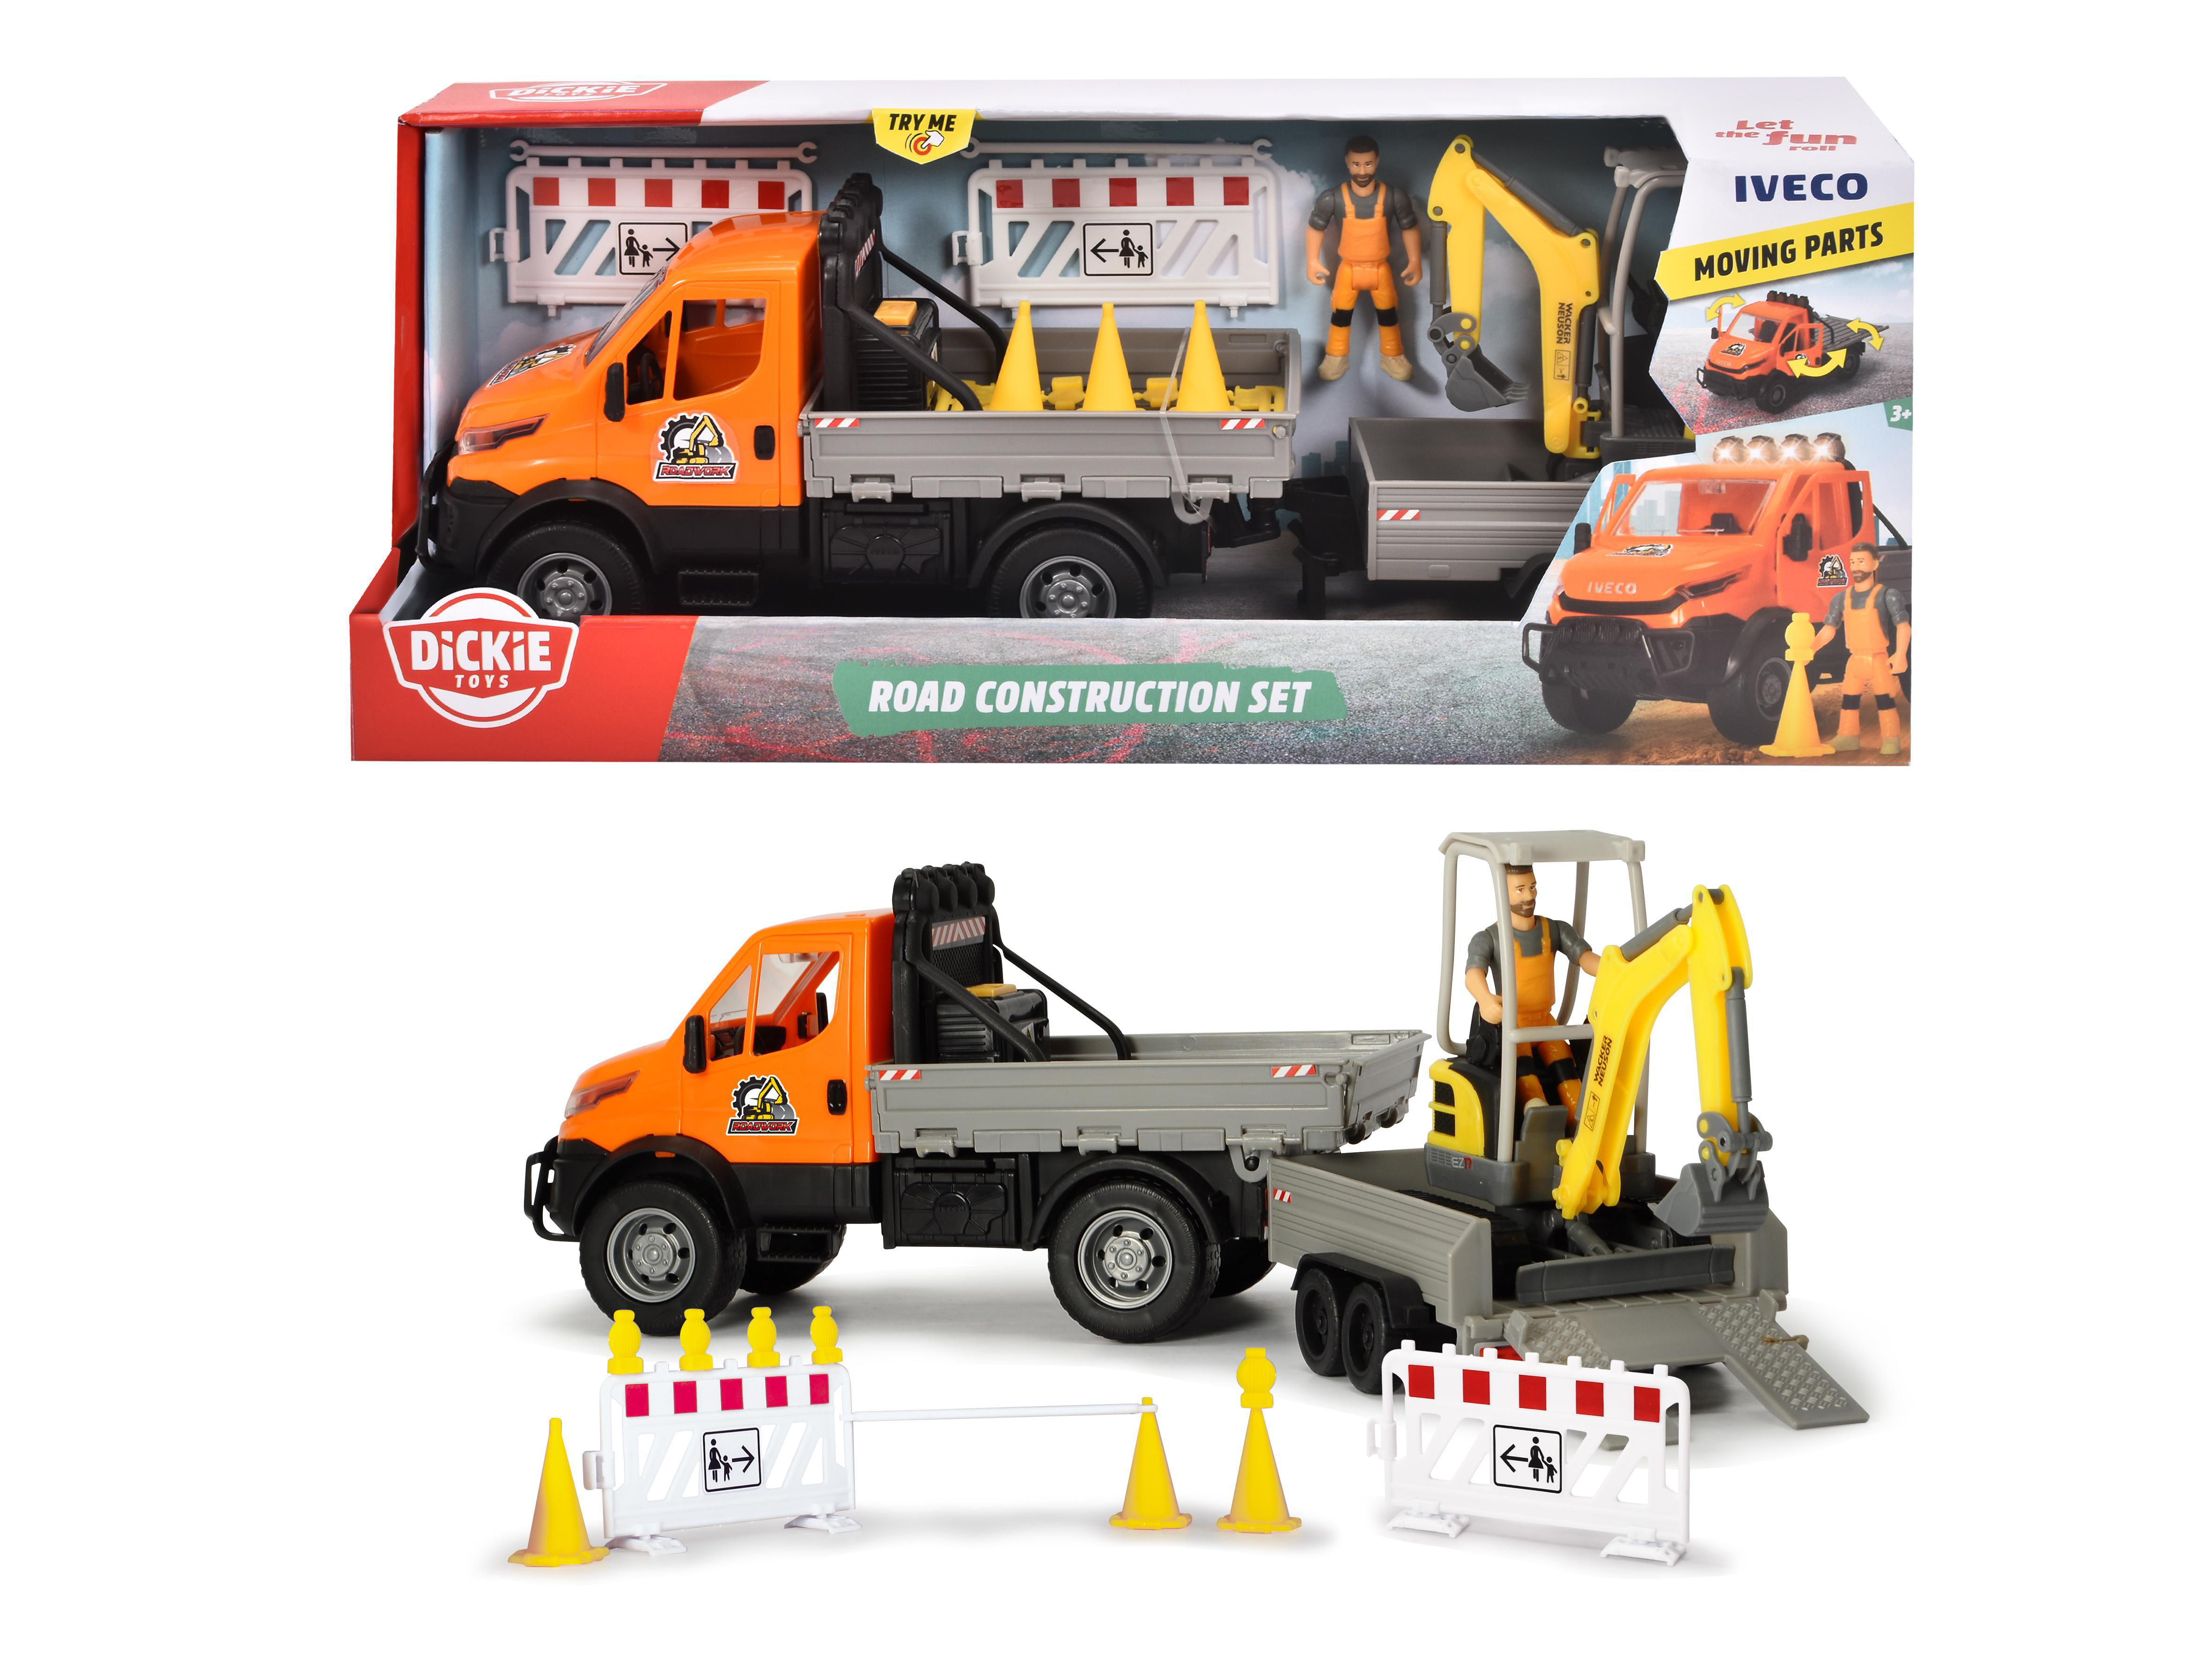 Spielzeugauto Iveco DICKIE-TOYS Mehrfarbig & Truck, Bagger, Sound mit Anhänger Straßenbau Set, Licht